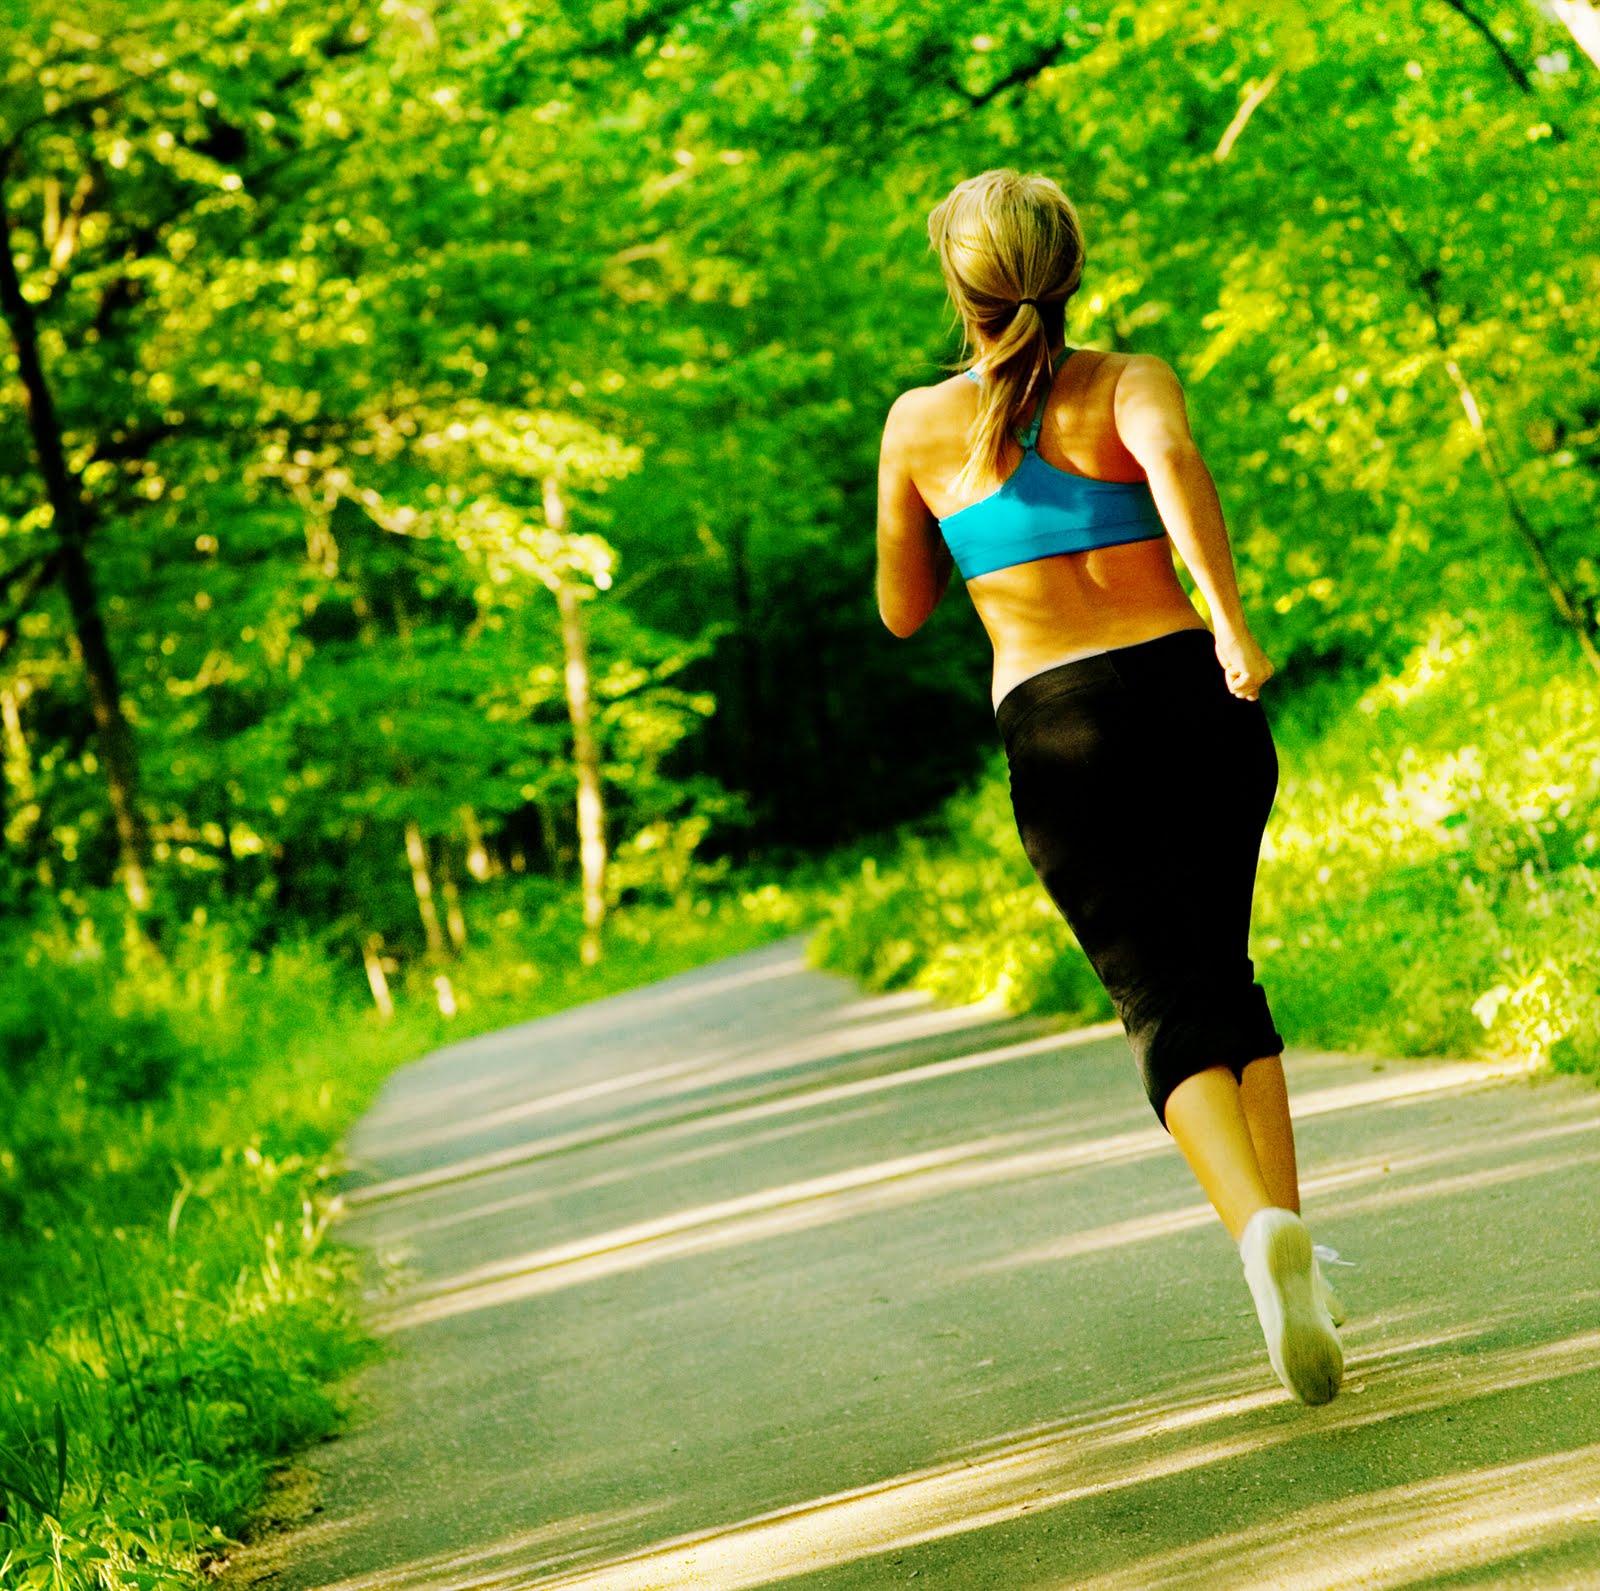 Dimagrire correndo, le regole base per perdere peso con il jogging